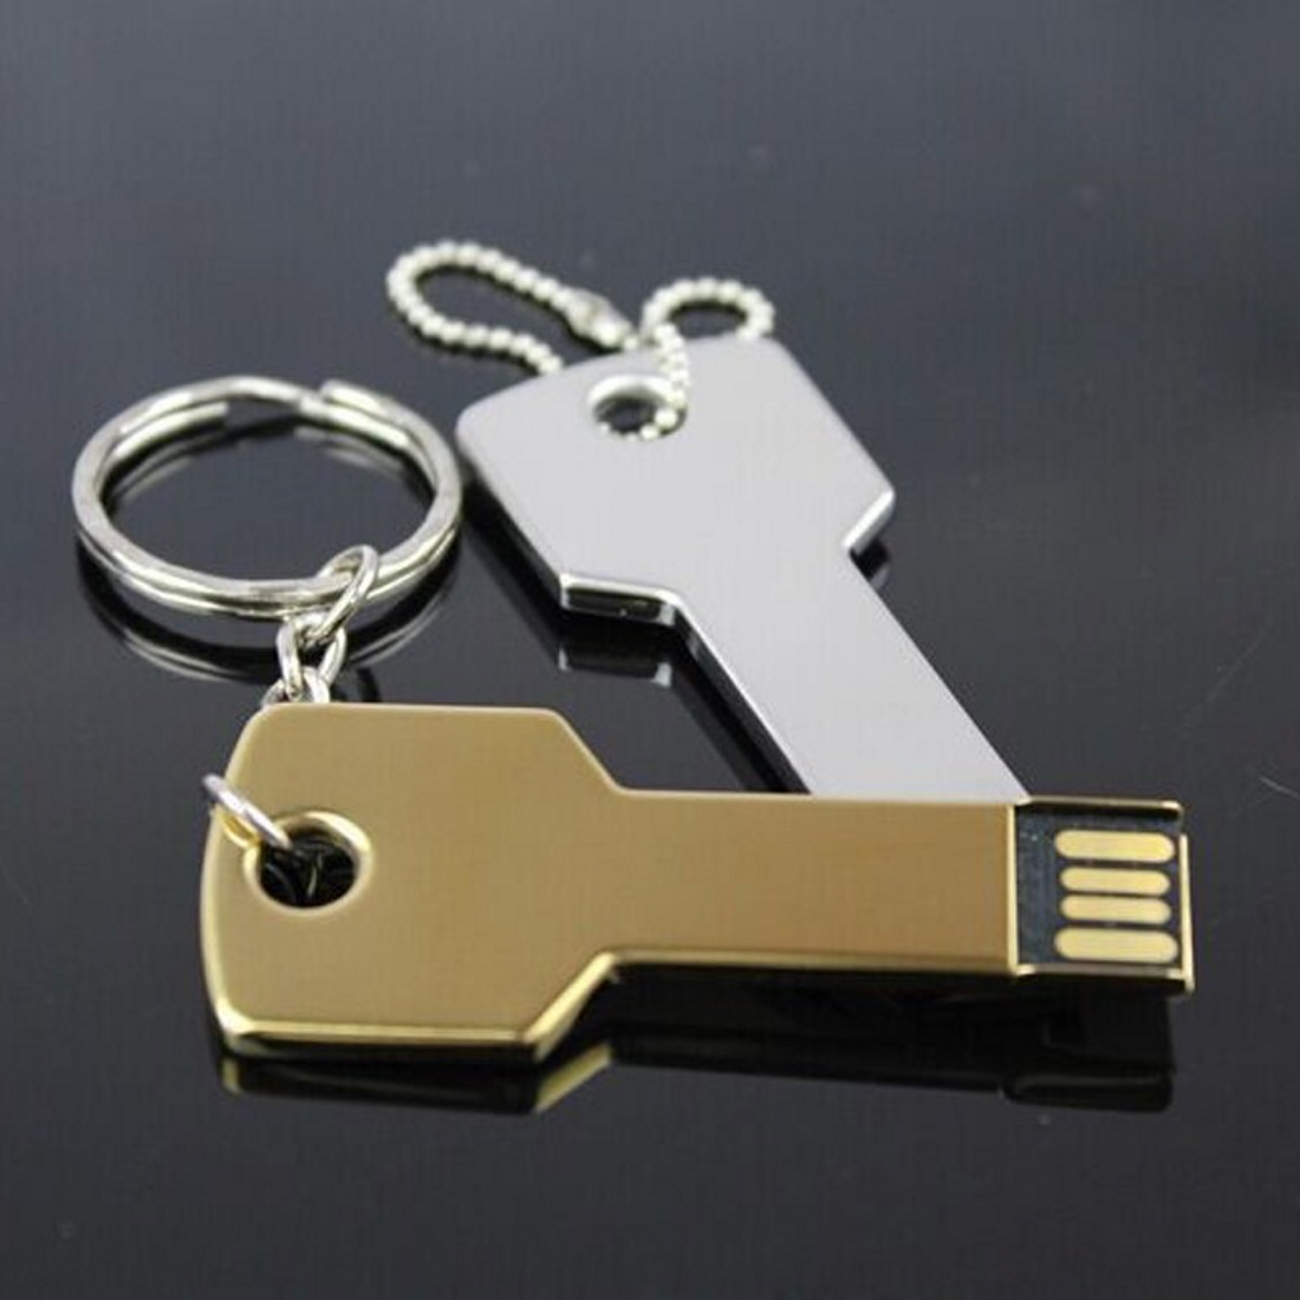 16 Key USB-Stick (Gold, USB Gold 16GB GB) GERMANY